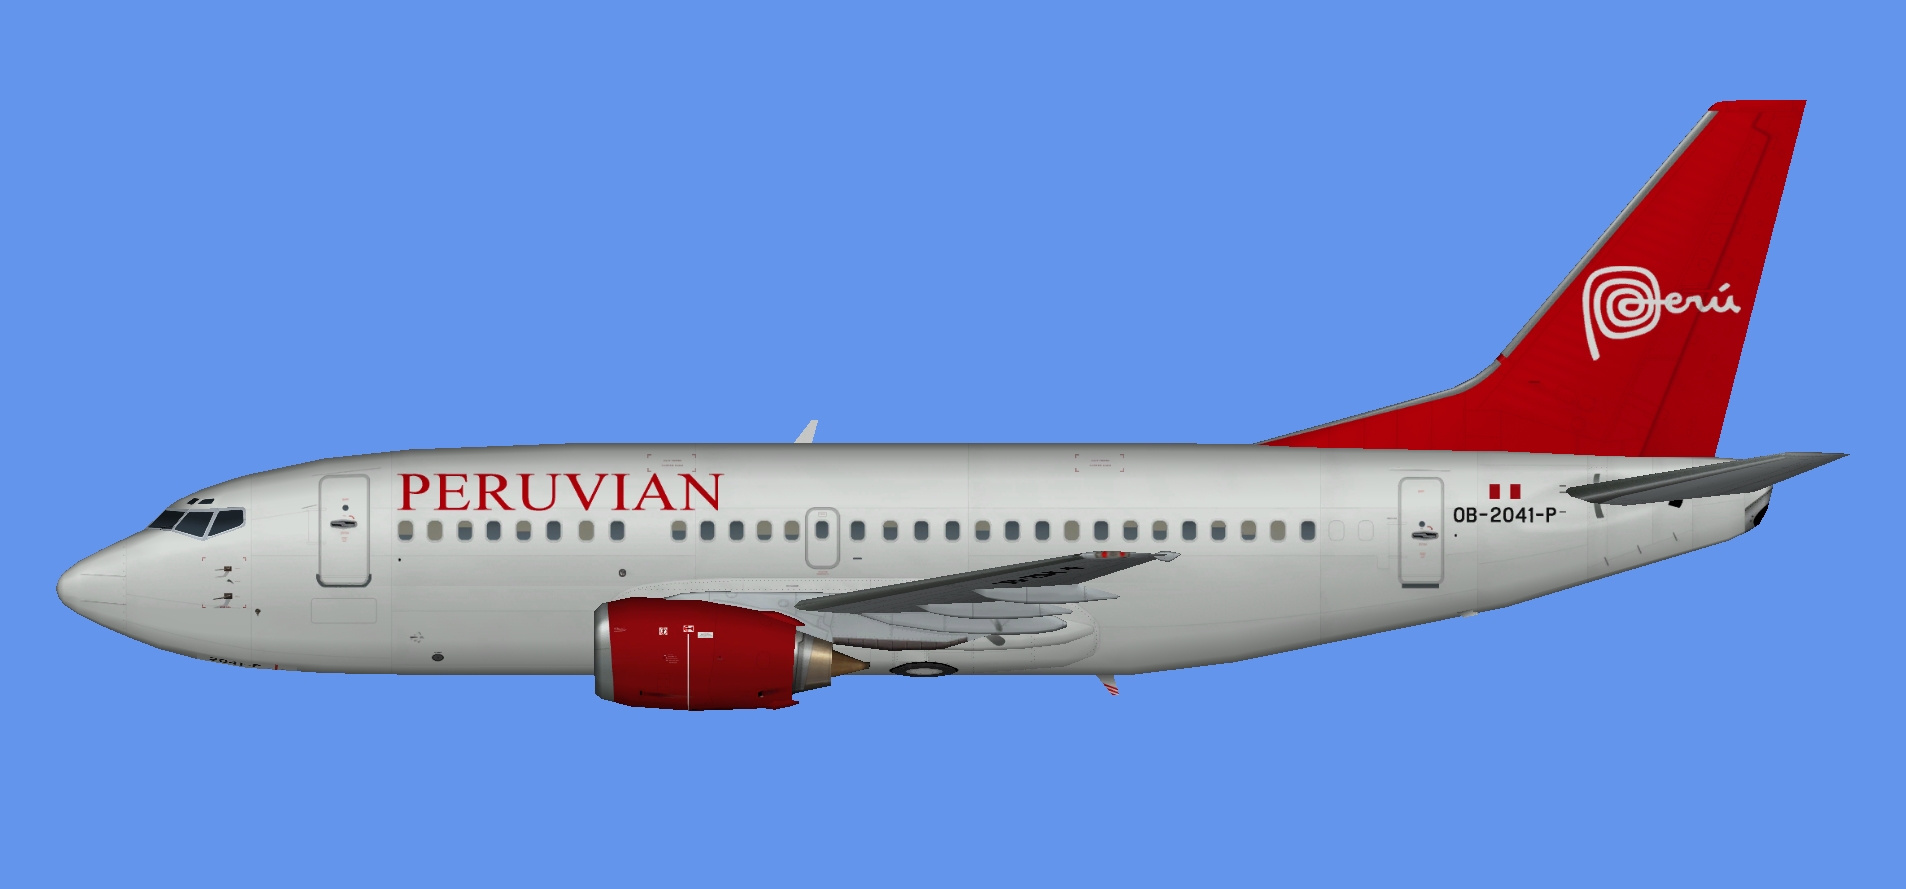 Peruvian Airlines Boeing 737-500